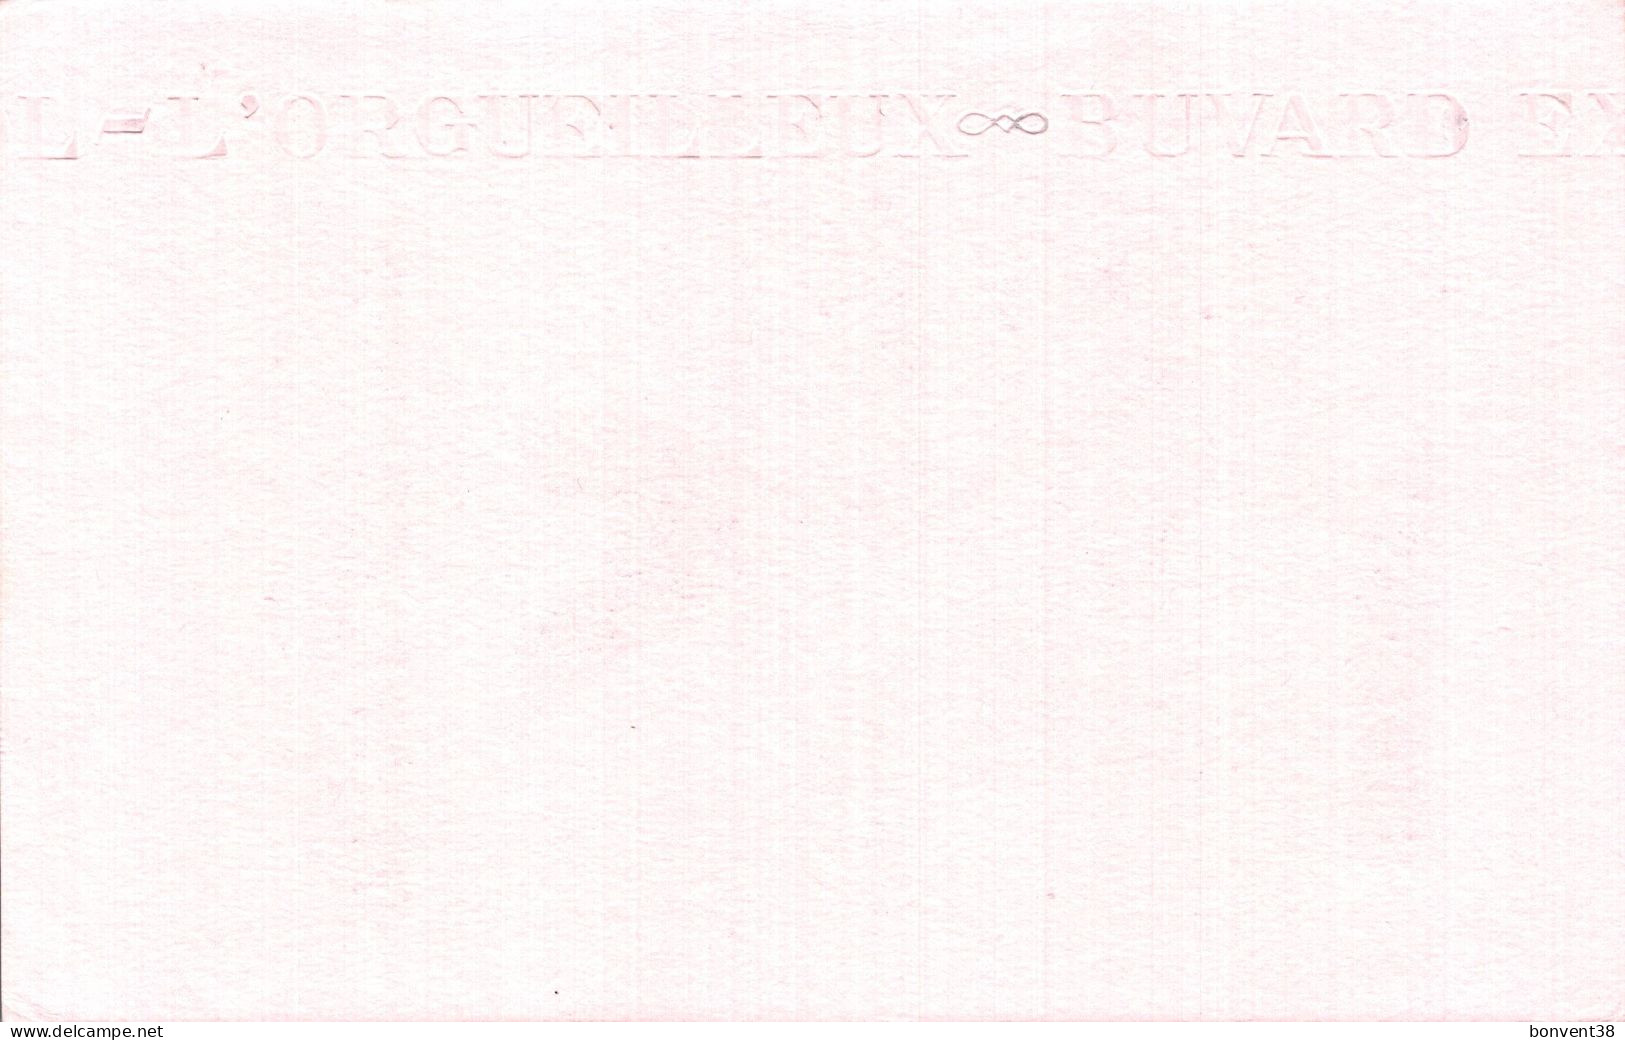 J2109 - BUVARD - DESTRE CHERPIN - Flanelle Coton - Ppp - Textile & Vestimentaire